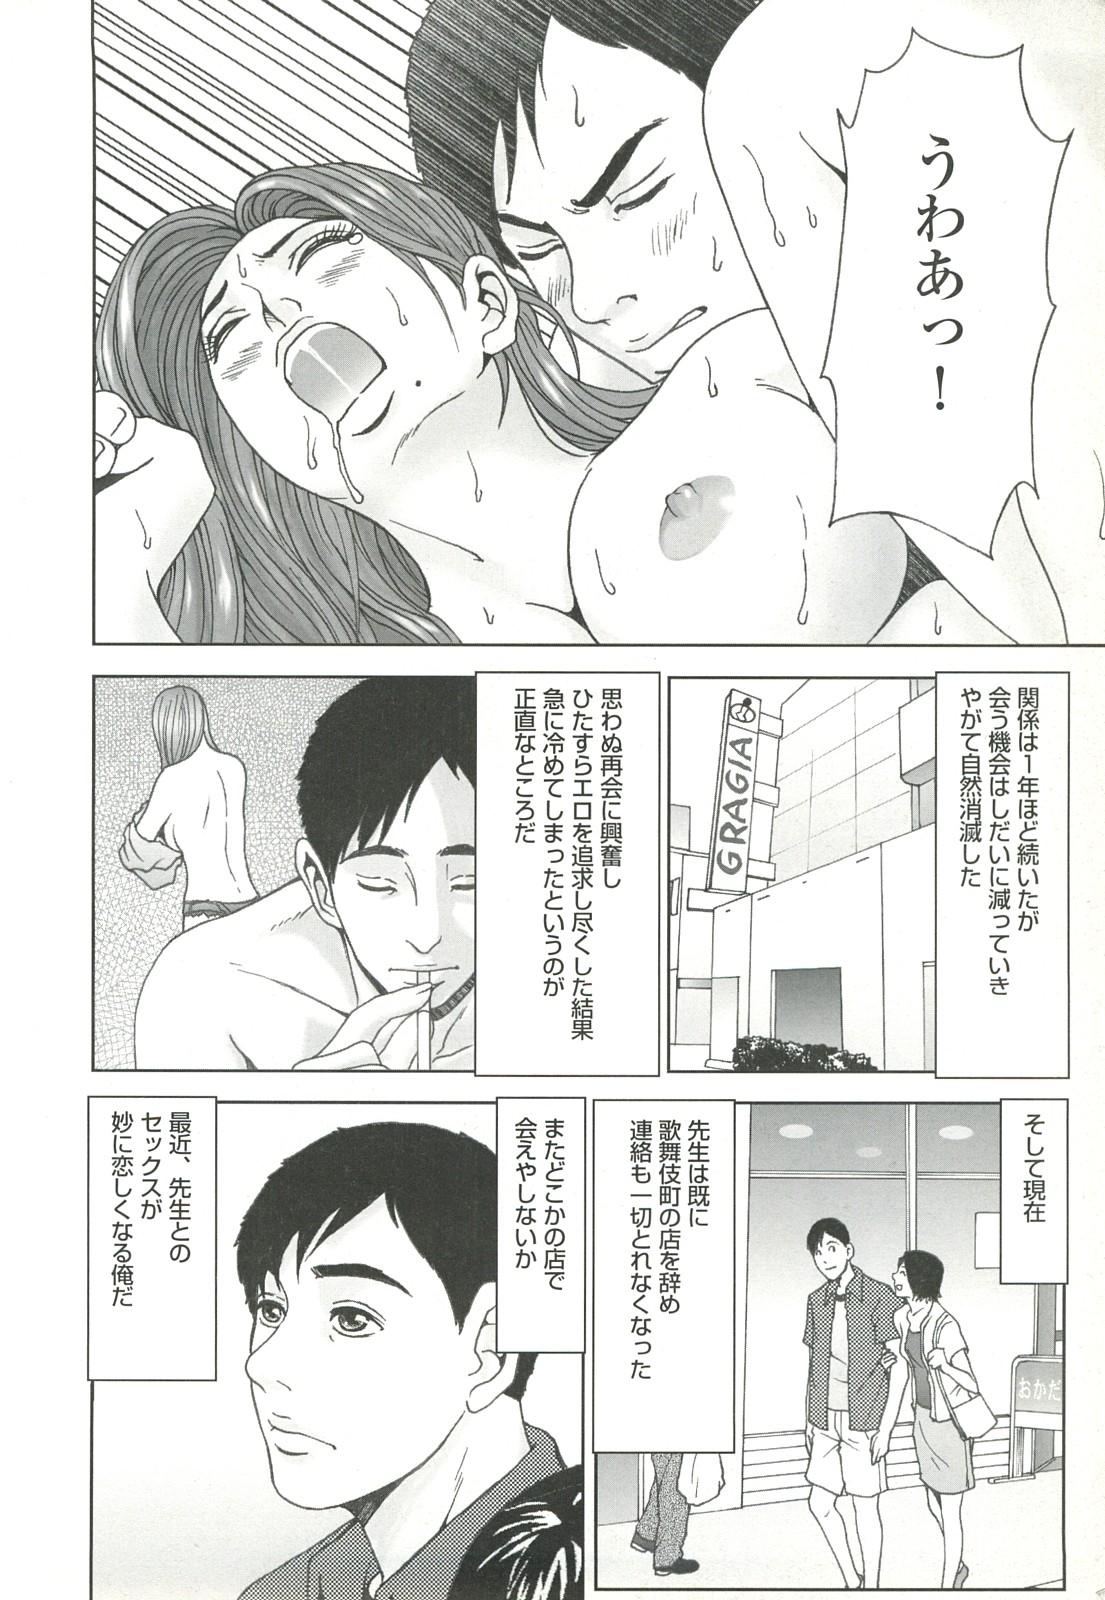 コミック裏モノJAPAN Vol.18 今井のりたつスペシャル号 21